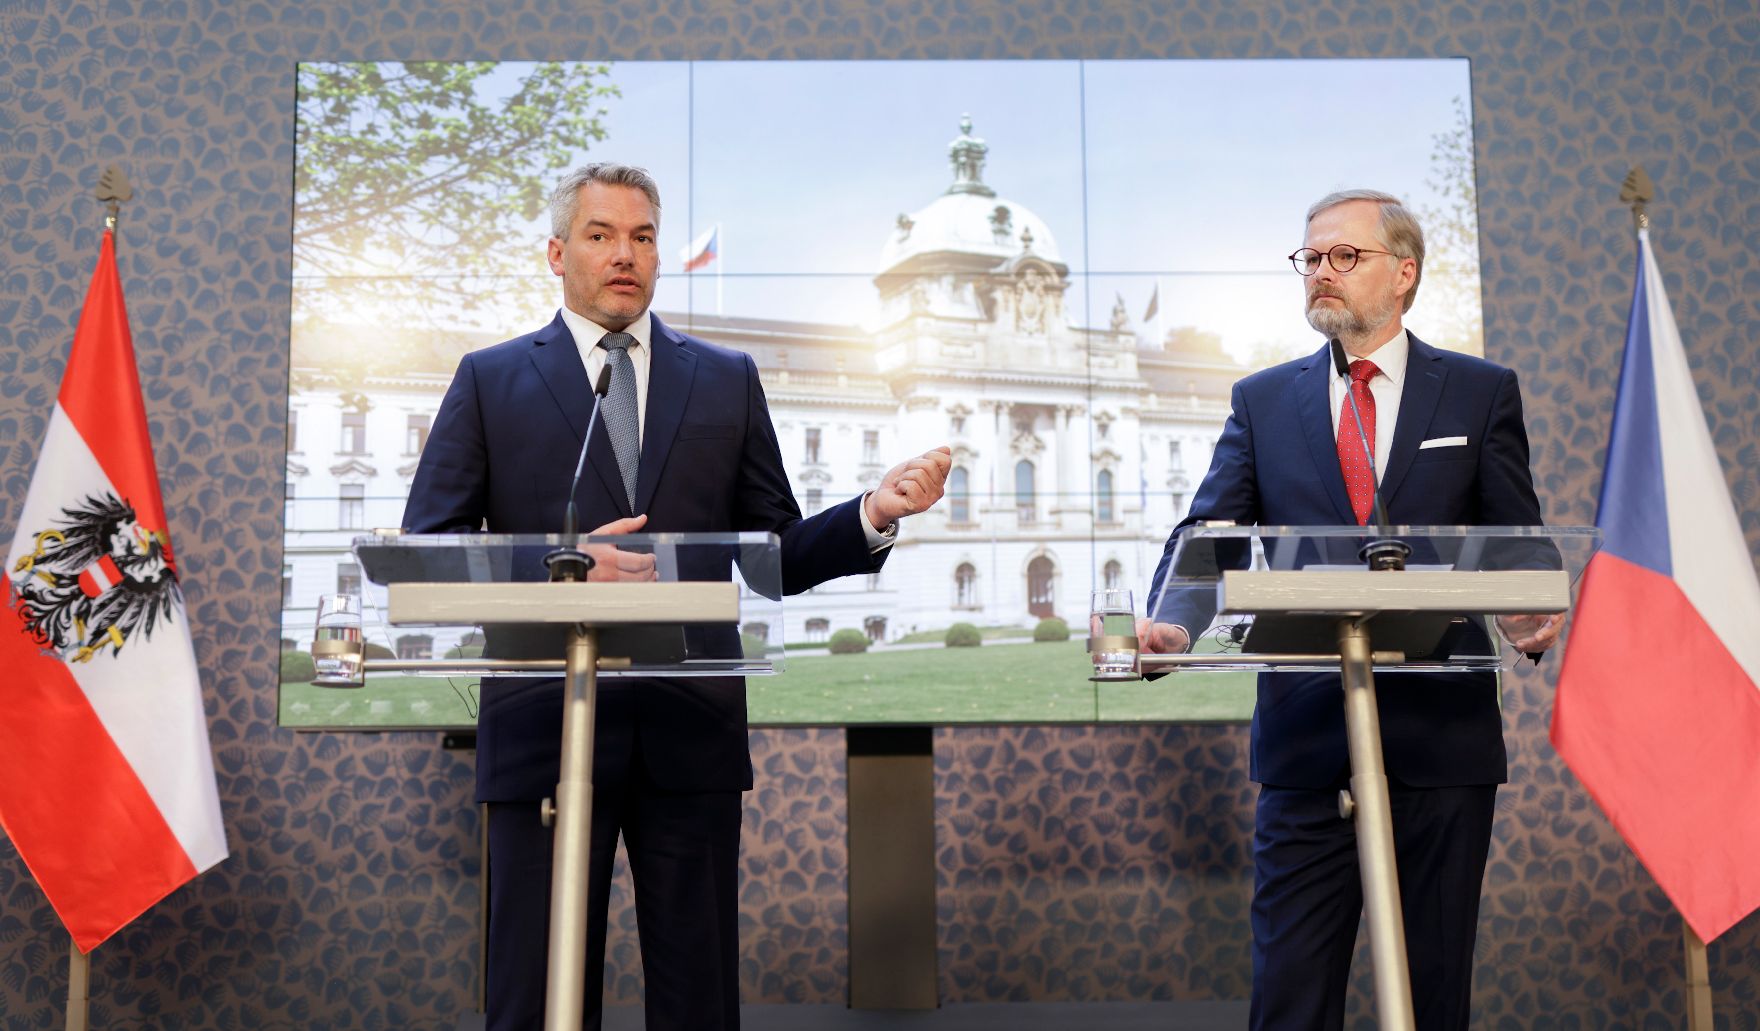 Am 17. Mai 2022 reiste Bundeskanzler Karl Nehammer (l.) zu einem Arbeitsbesuch nach Prag. Im Bild mit dem tschechischen Ministerpräsidenten Petr Fiala (r.) bei der Pressekonferenz.